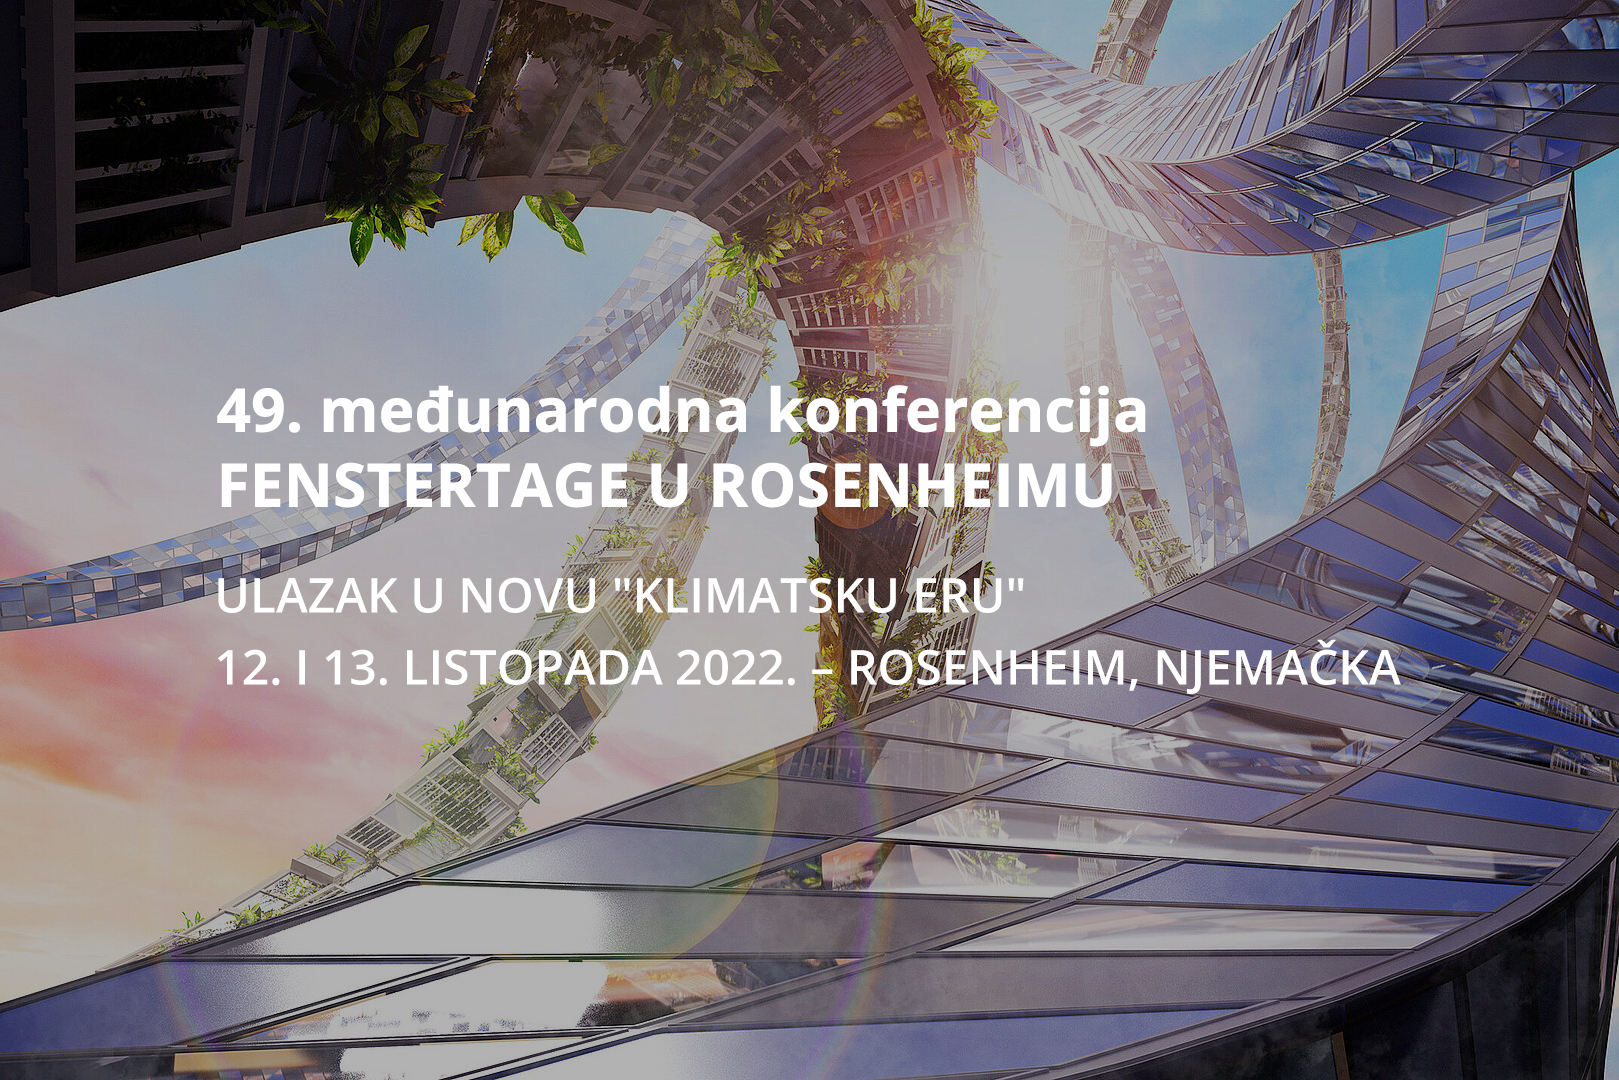 49. međunarodna konferencija FENSTERTAGE U ROSENHEIMU